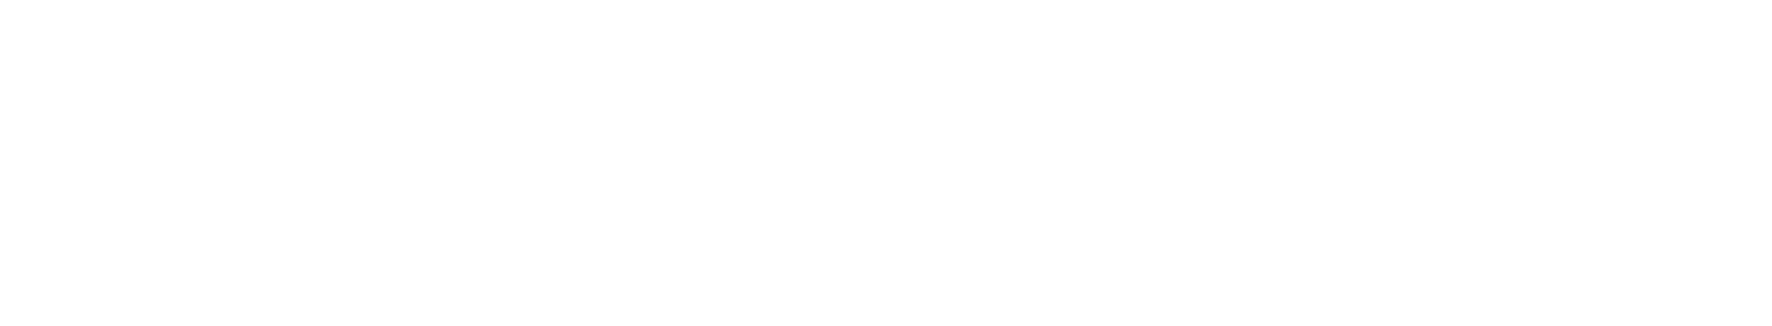 ChampionsNET - Digital Innovation